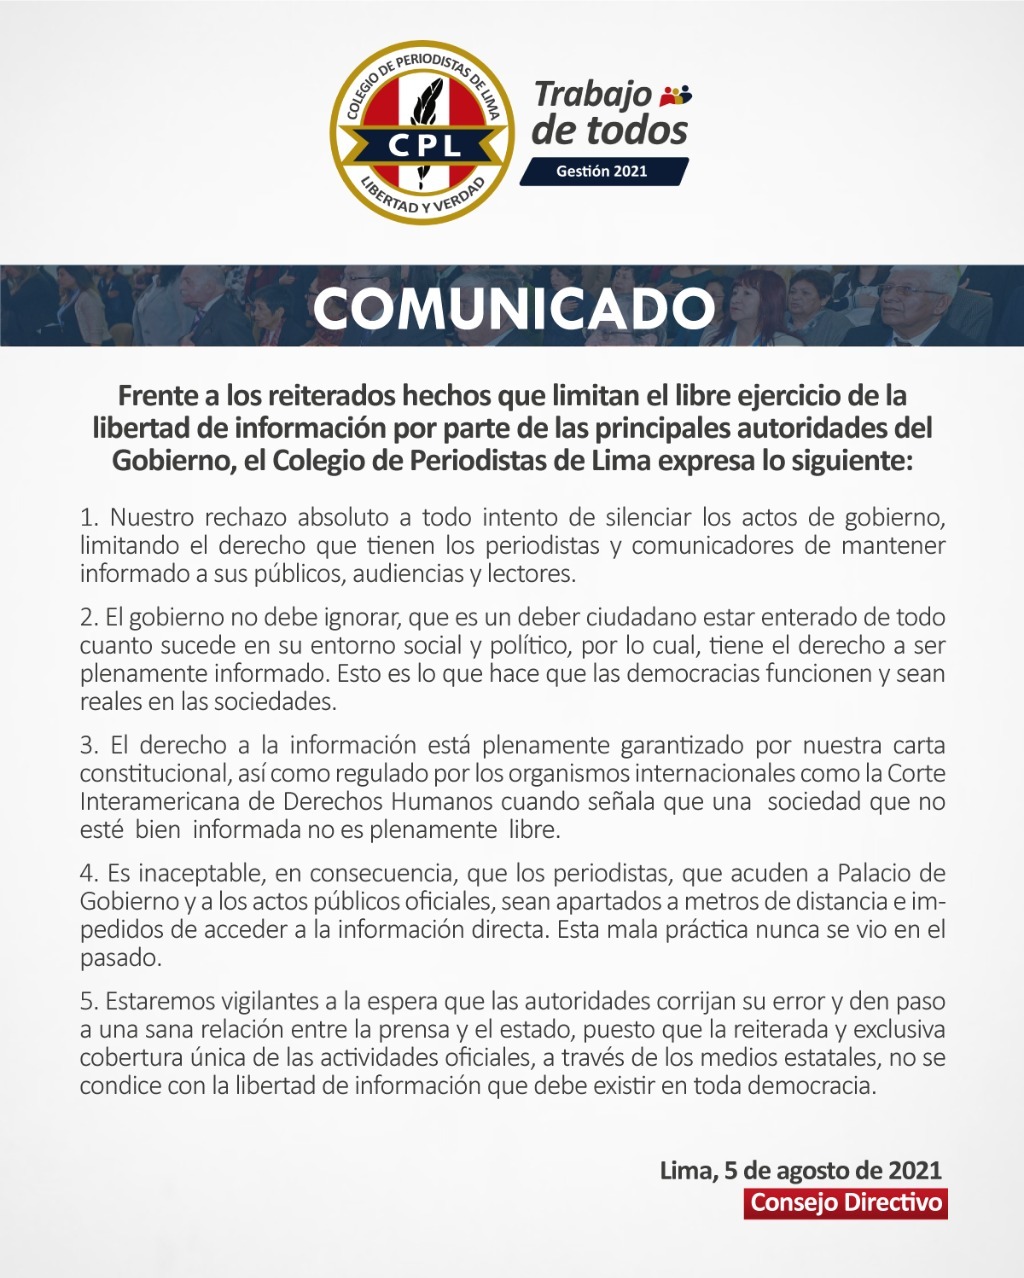 CPL: Es inaceptable que periodistas que van a Palacio sean impedidos de acceder a la información directa